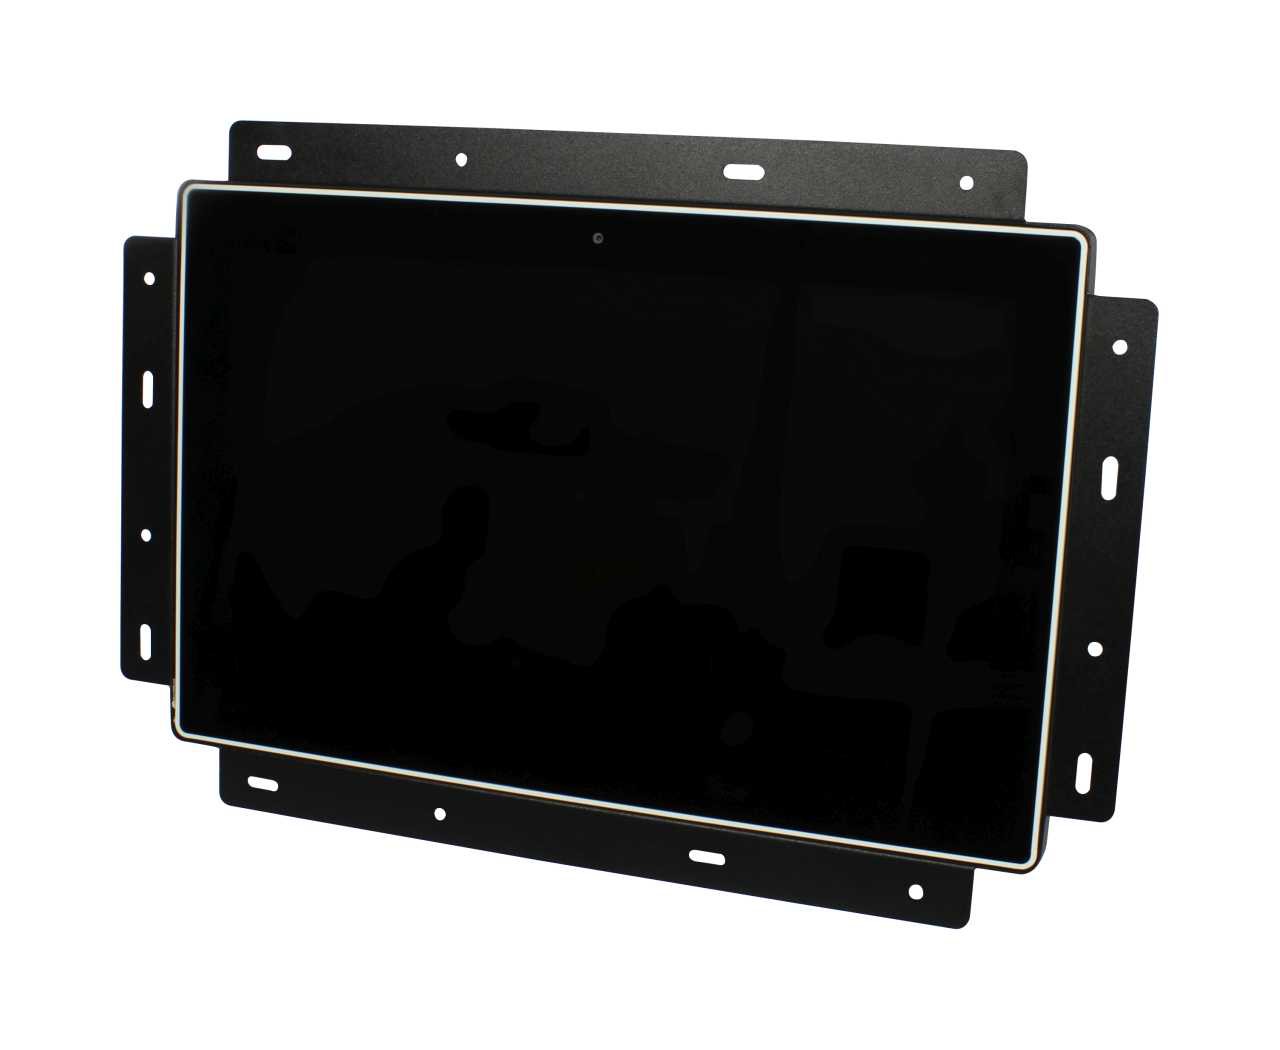 ALLNET 15 Zoll Touch Display Tablet mit Wandmontage Rahmen für Unterputz/Hohlraum aufliegend